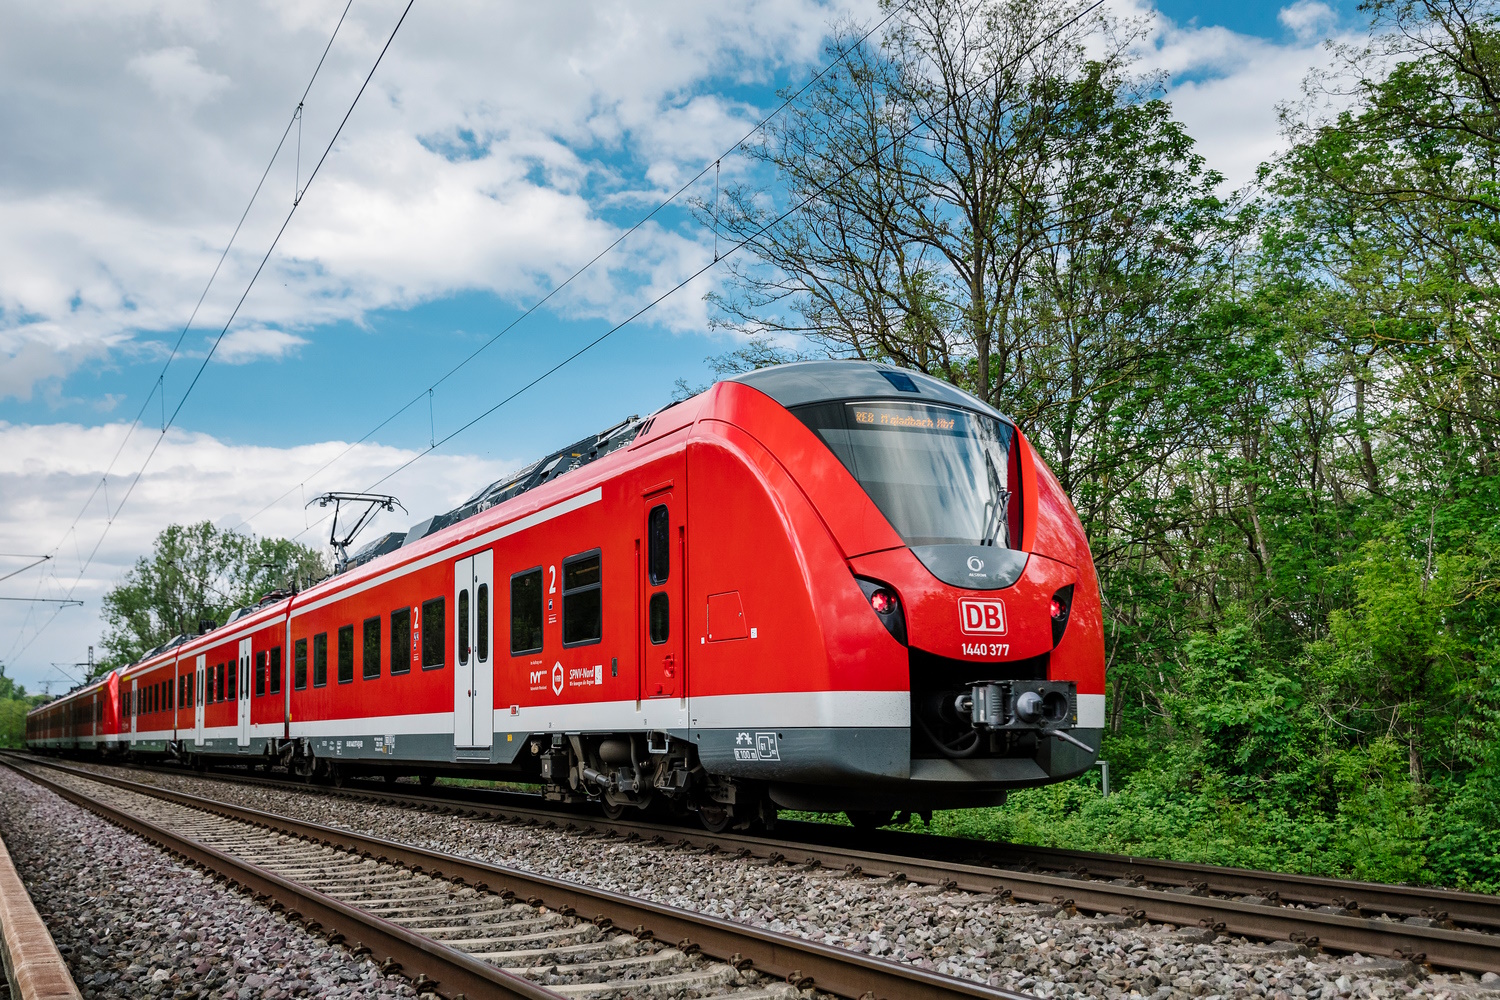 RE 8 - Alstom Coradia Continental (ET 1440) in Fahrt (Foto: Smilla Dankert)